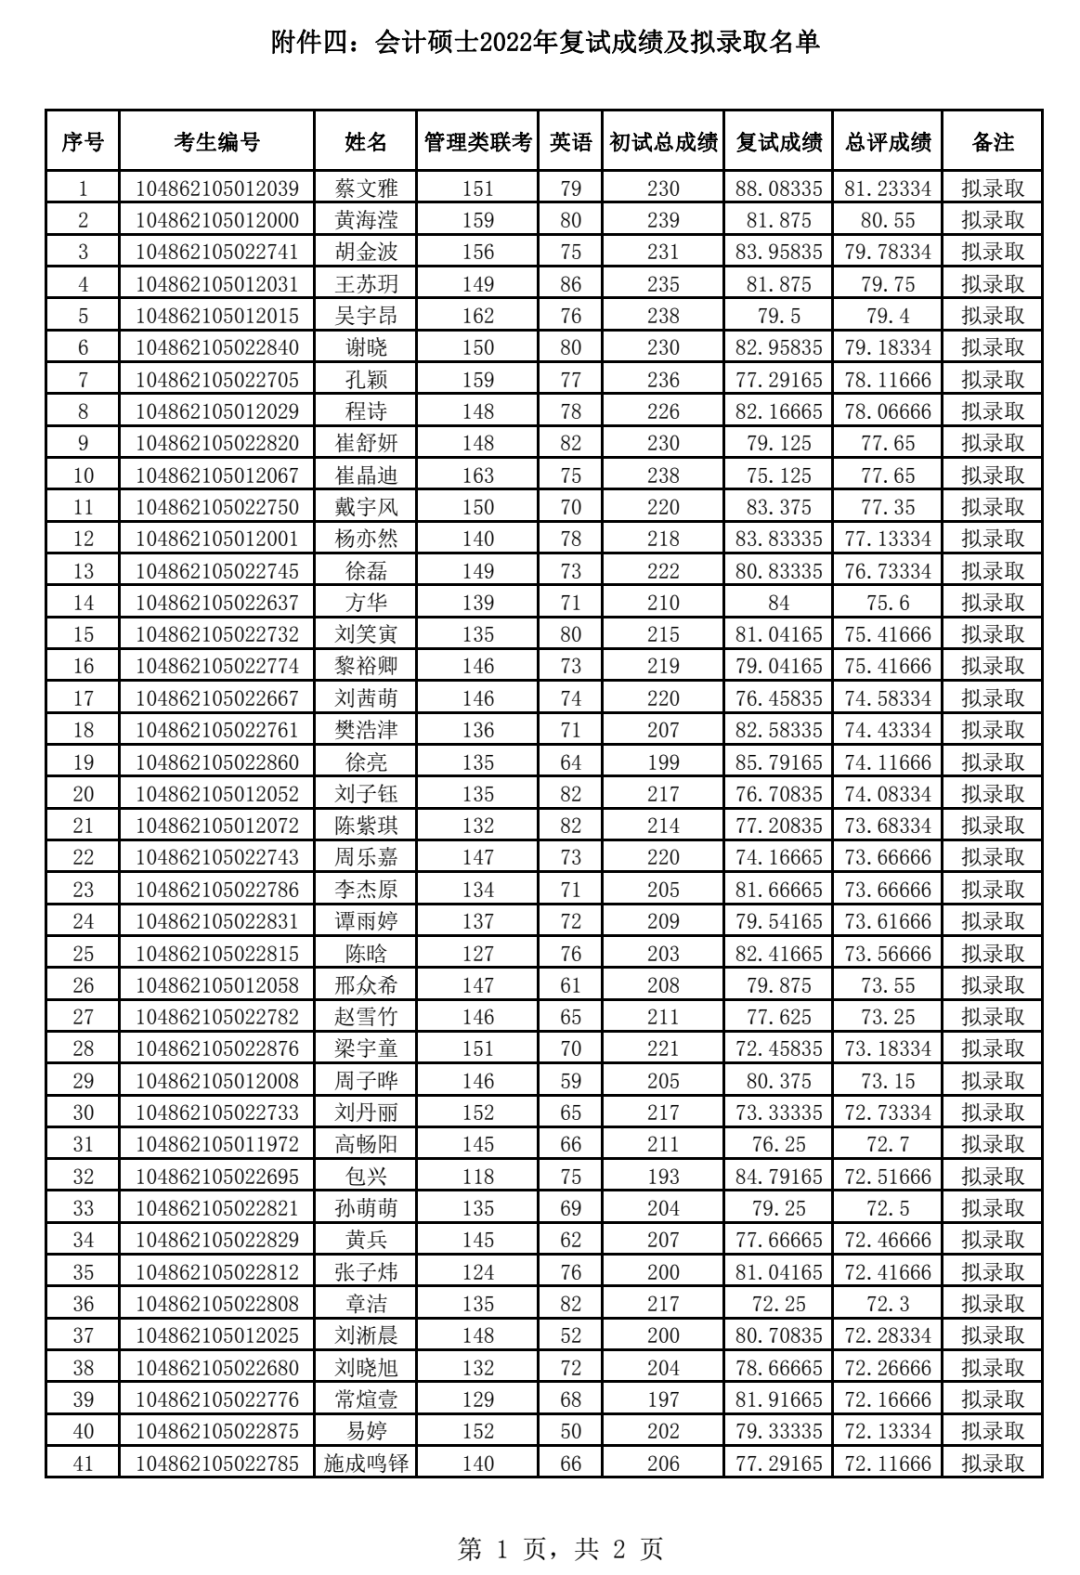 重要!!31所高校官方拟录取名单,初试第一260+竟然被刷!?w5.jpg